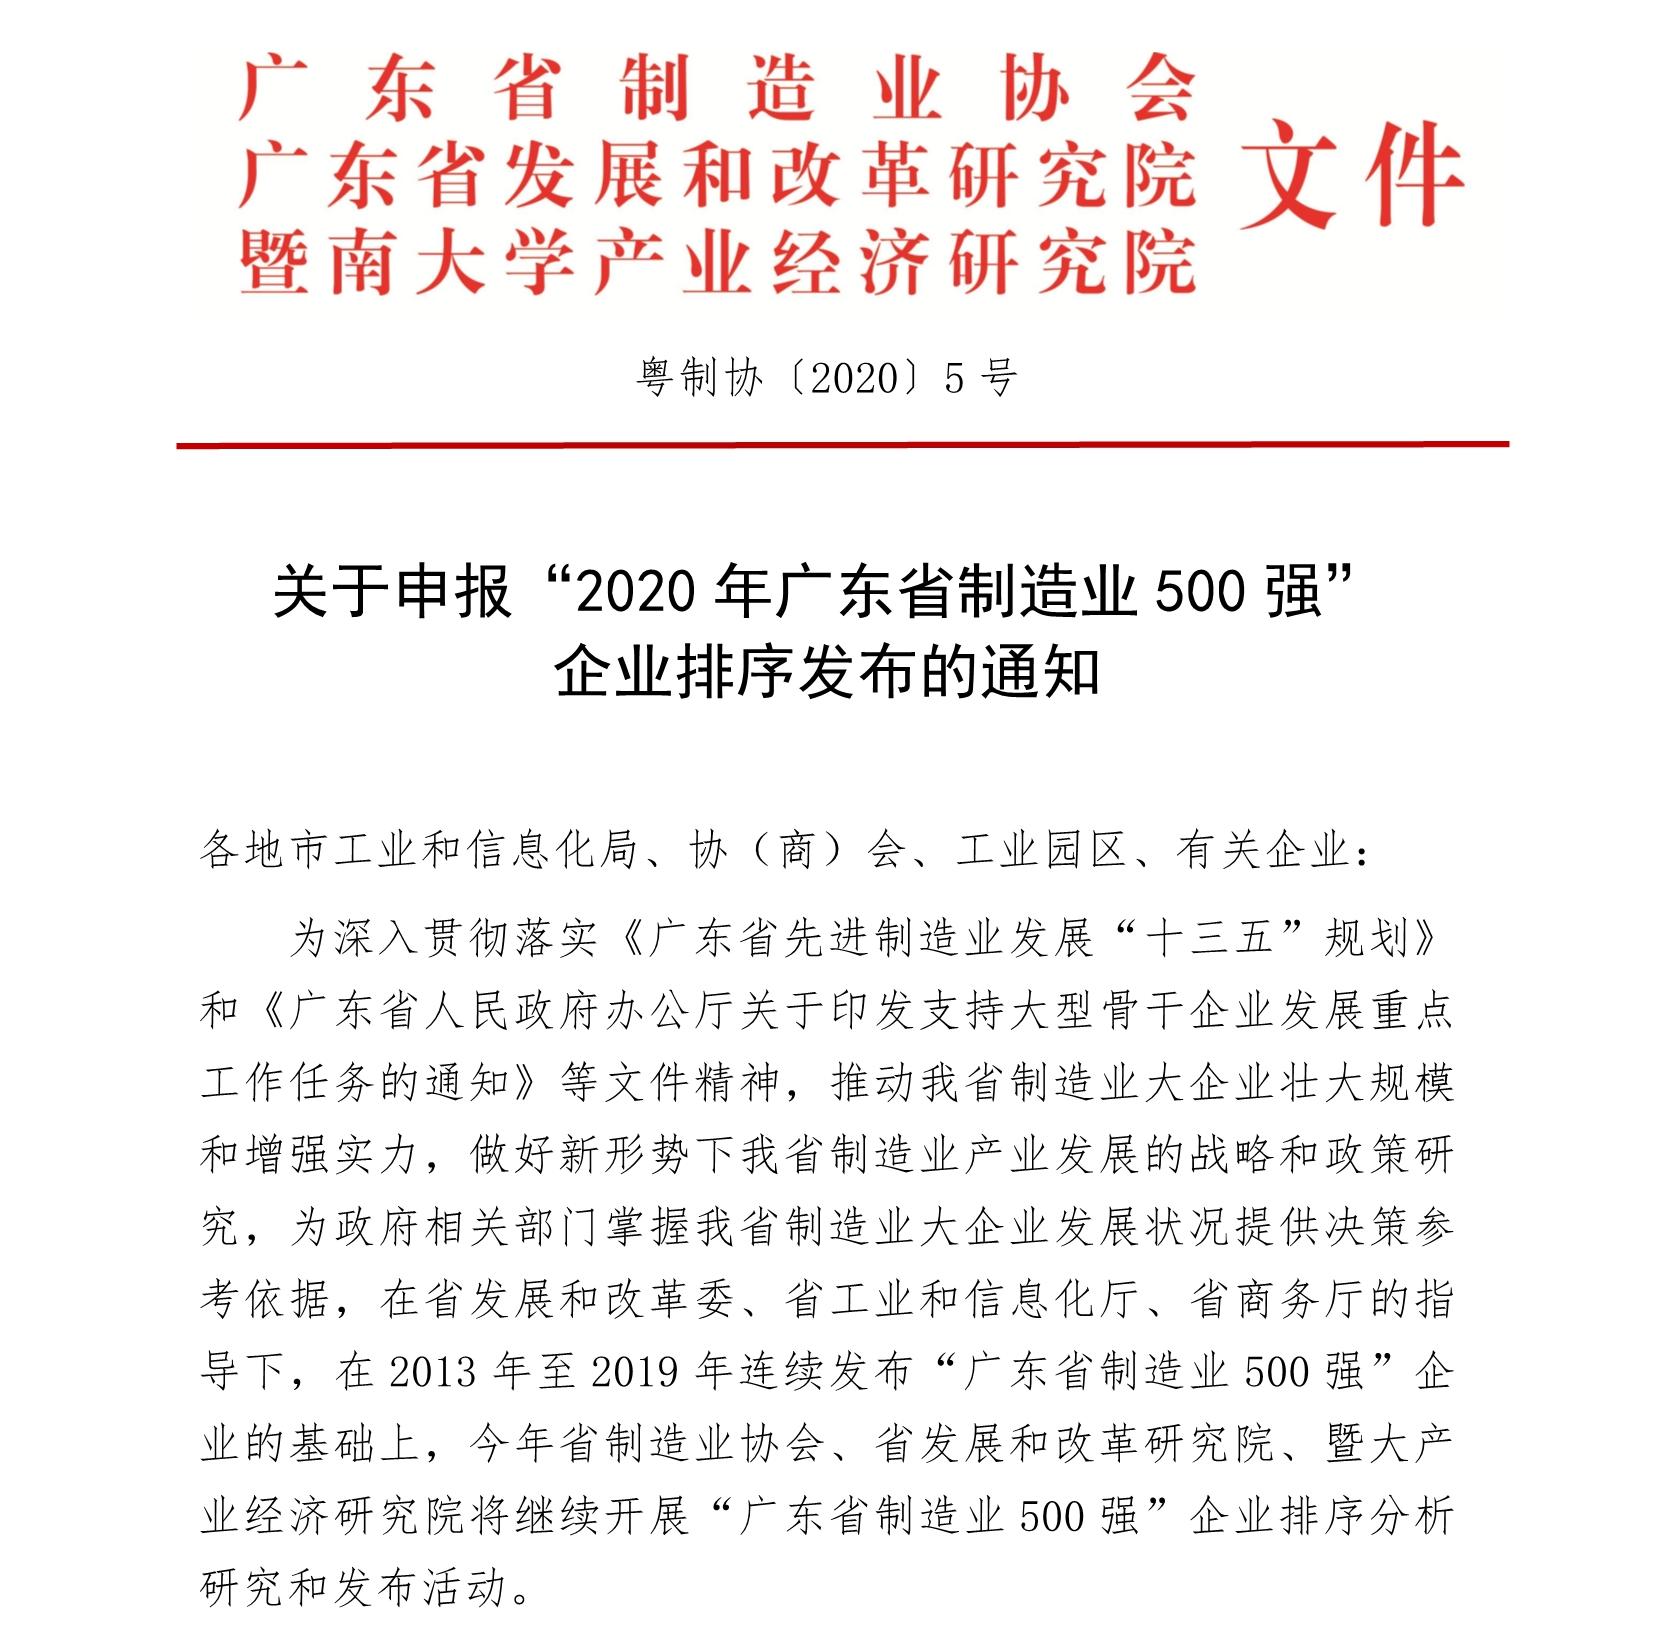 关于申报“2020年广东省制造业500强” 企业排序发布的通知